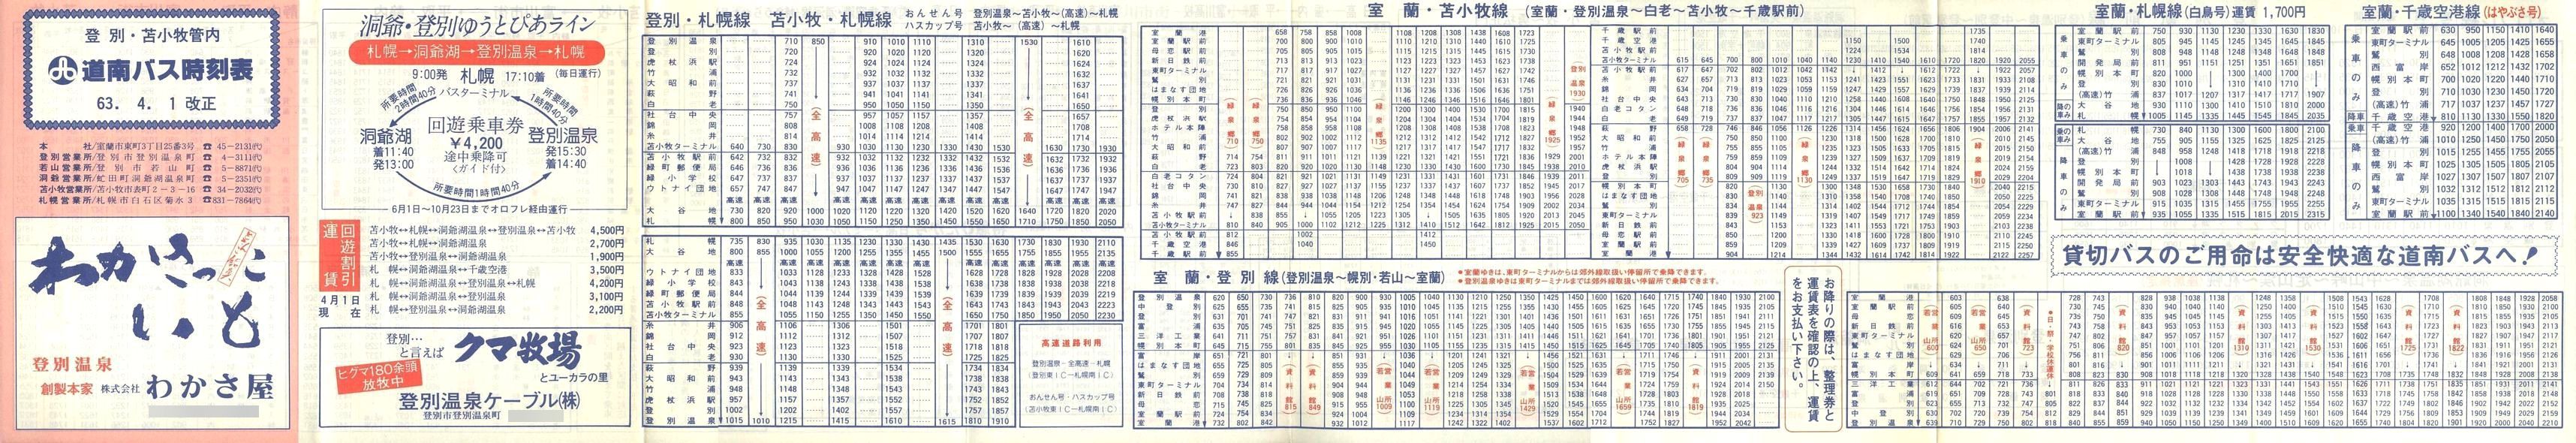 1988-04-01改正_道南バス_登別・苫小牧管内時刻表表面